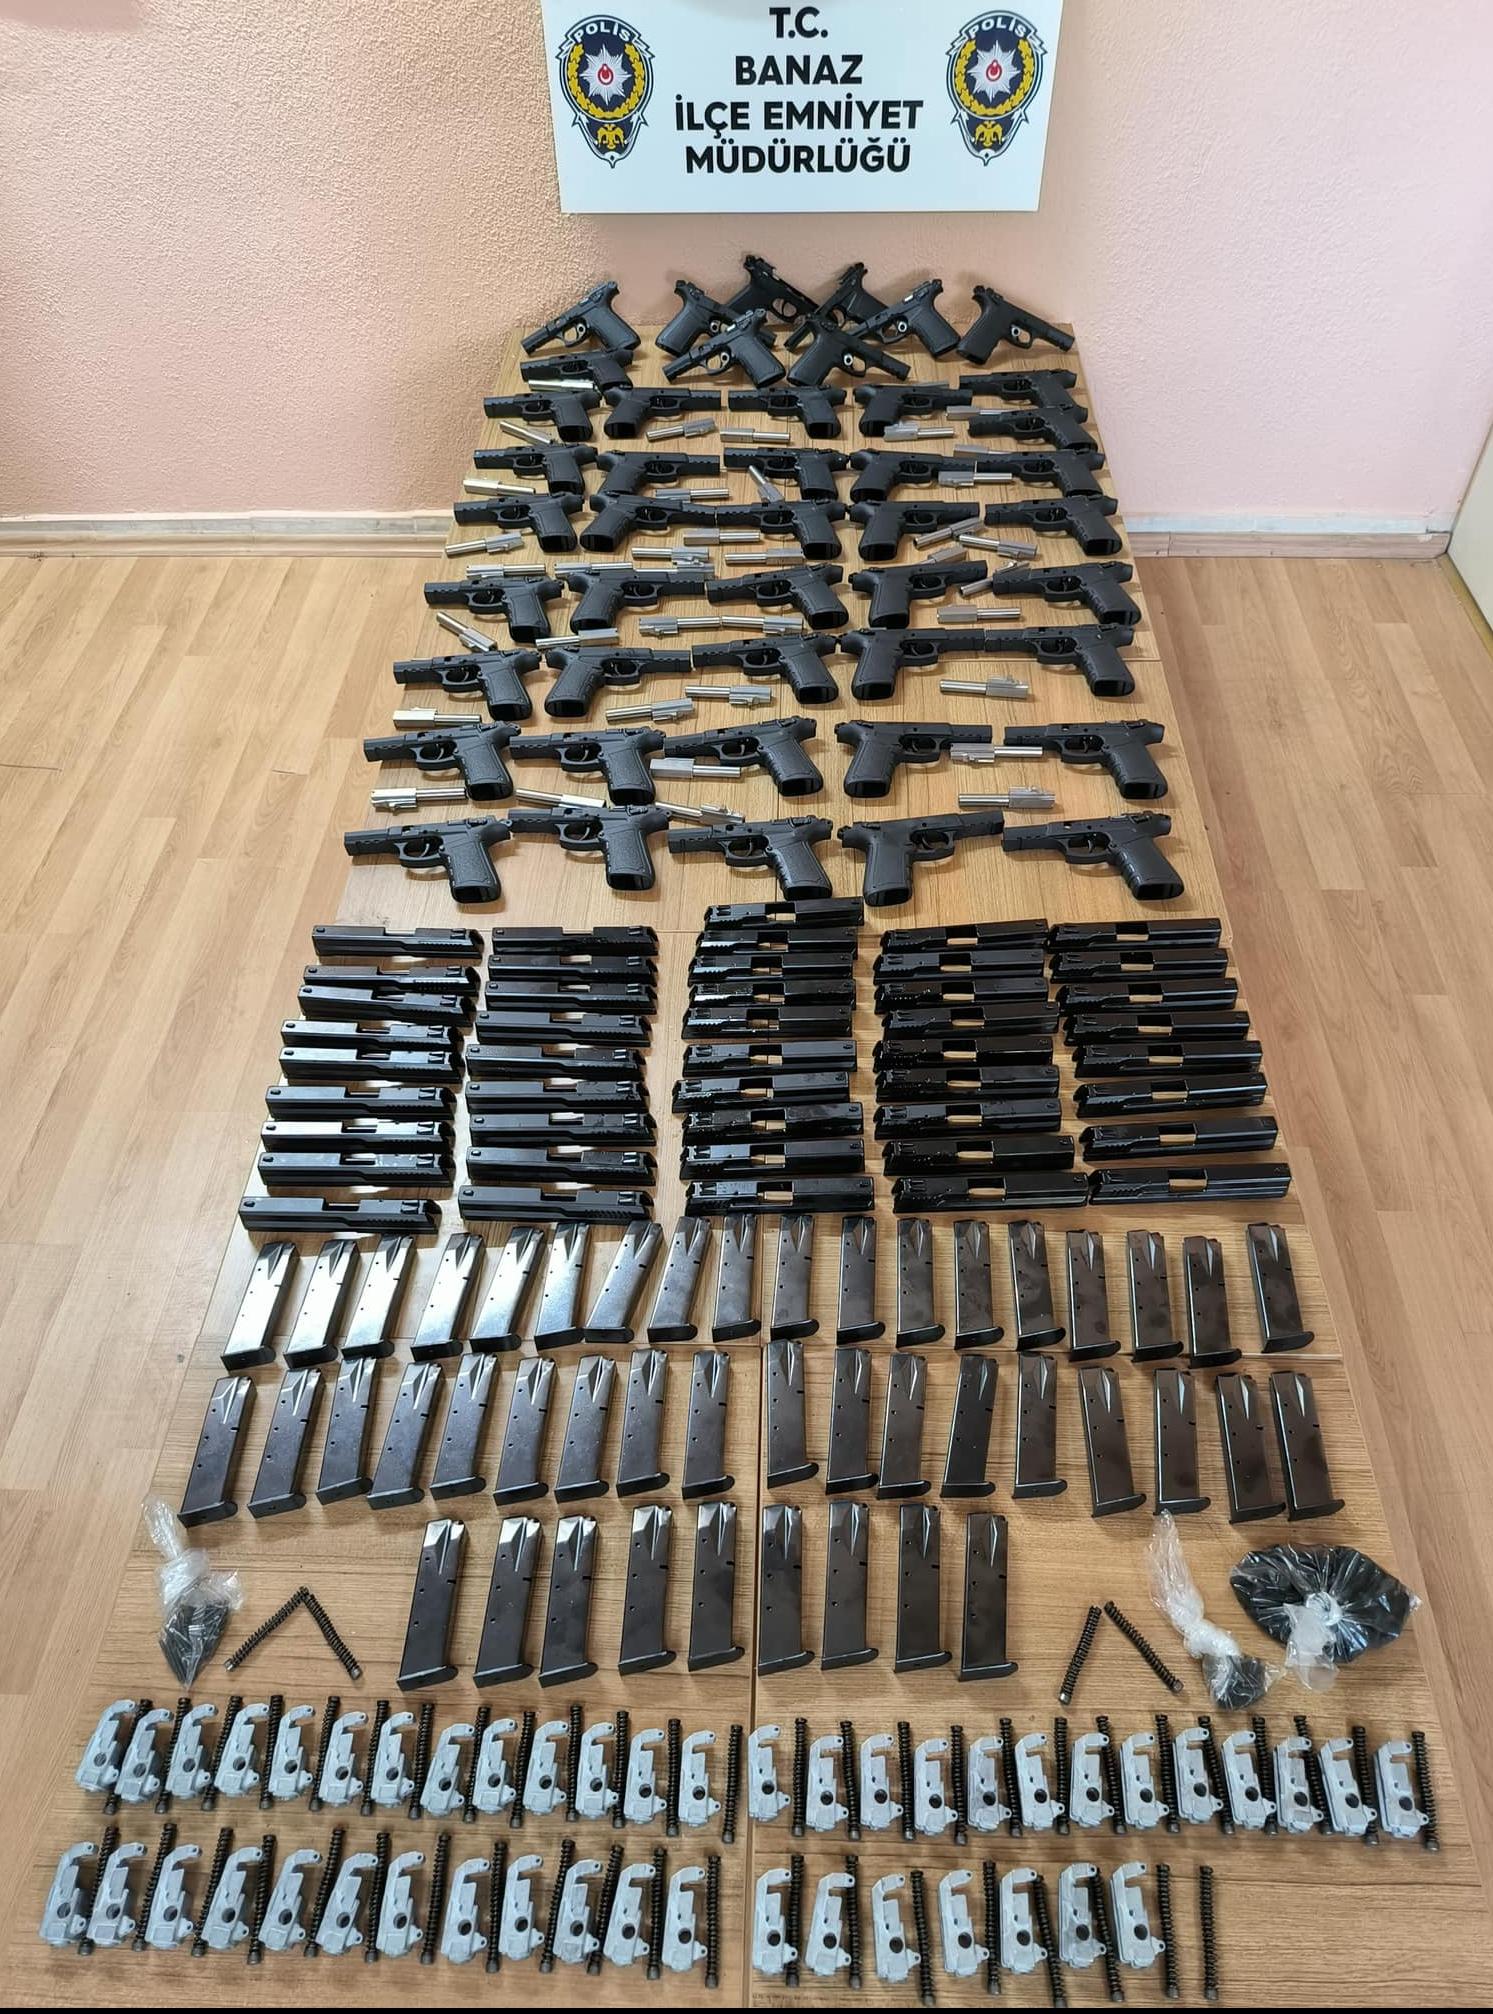 Uşak Emniyetinden Kaçak Silah Operasyonu: 45 Tabanca Parçası ve Şarjör Ele Geçirildi!